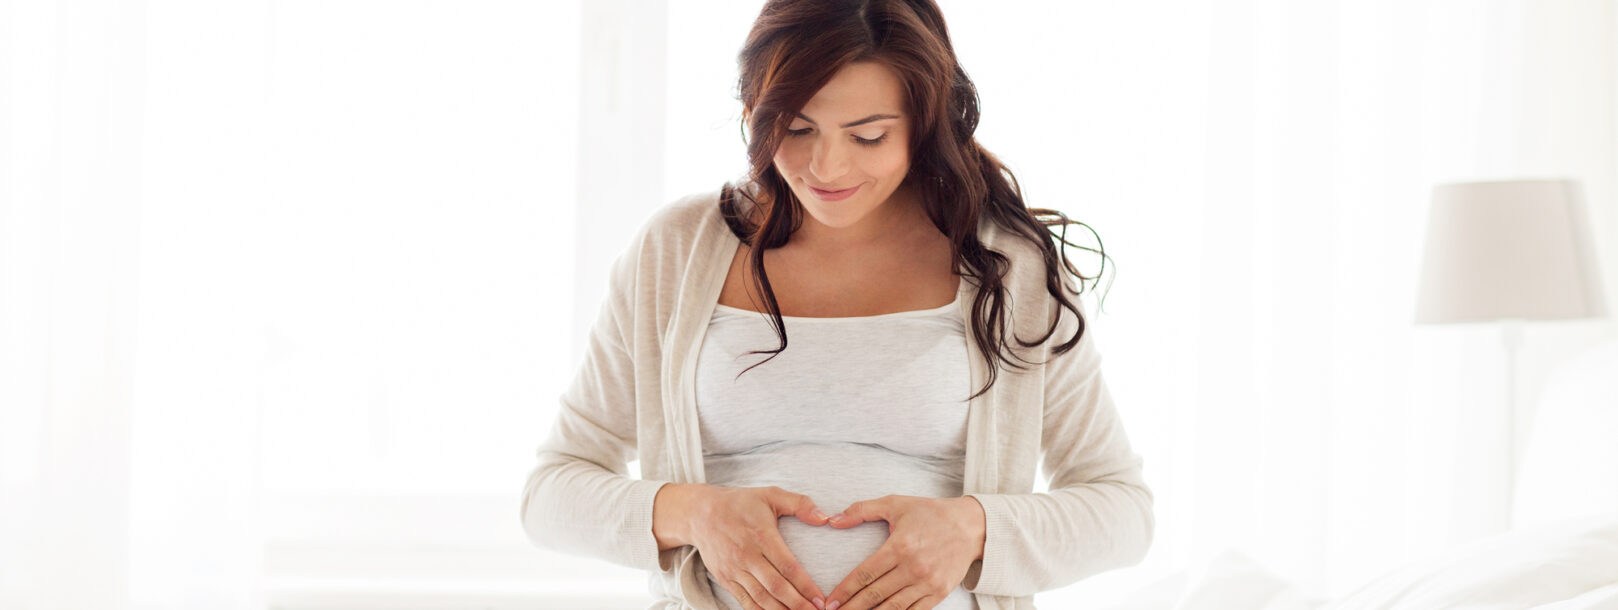 Hvornår vokser maven mest, når man er gravid?